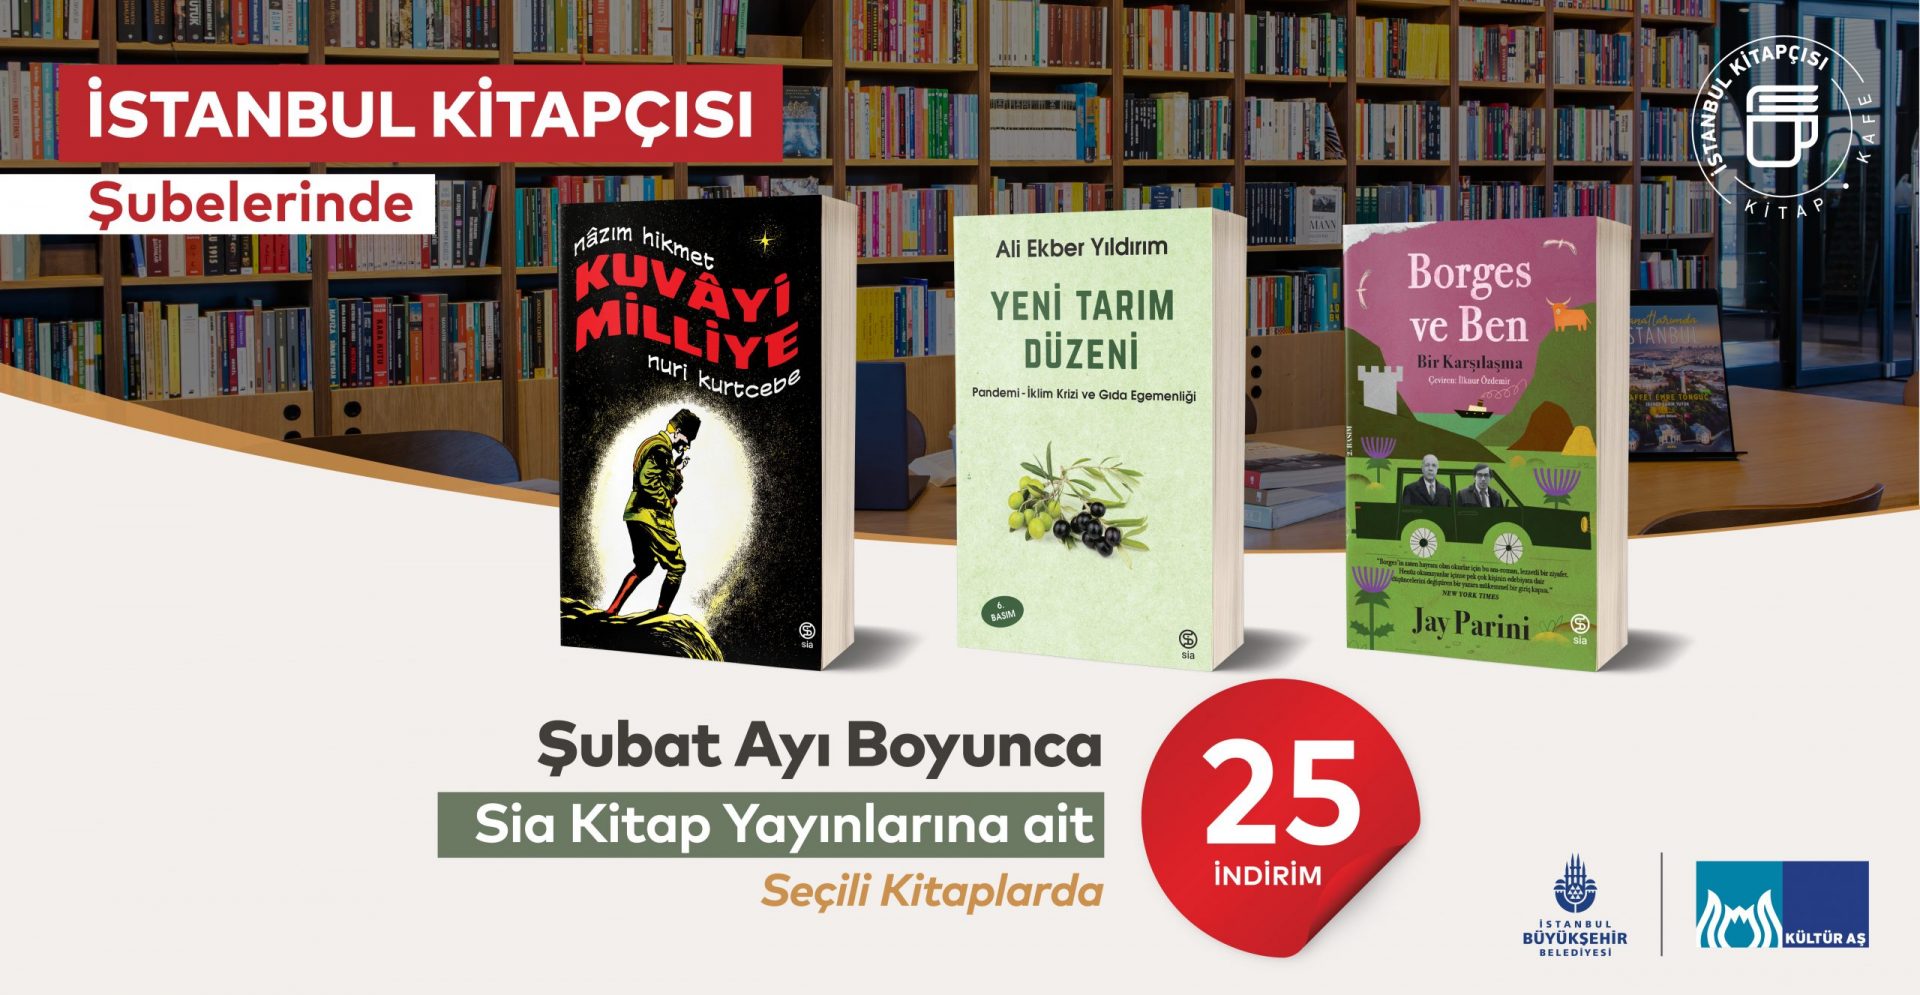 Sia Kitap’tan çıkan seçili yayınlar İstanbul Kitapçısı’nda indirimde!